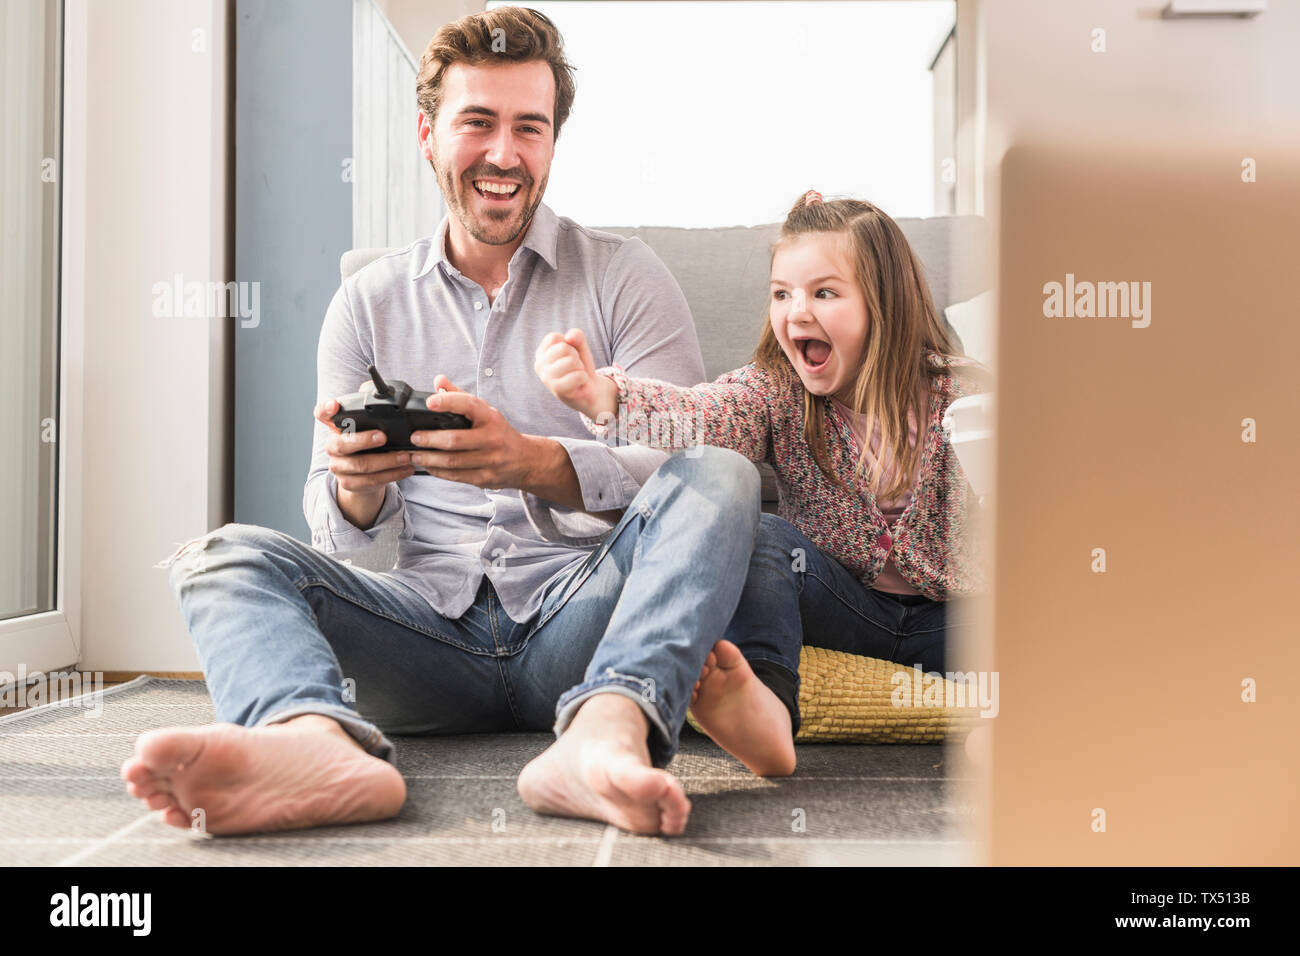 Joven y pequeña niña jugando juego de ordenador con consola de videojuegos Foto de stock